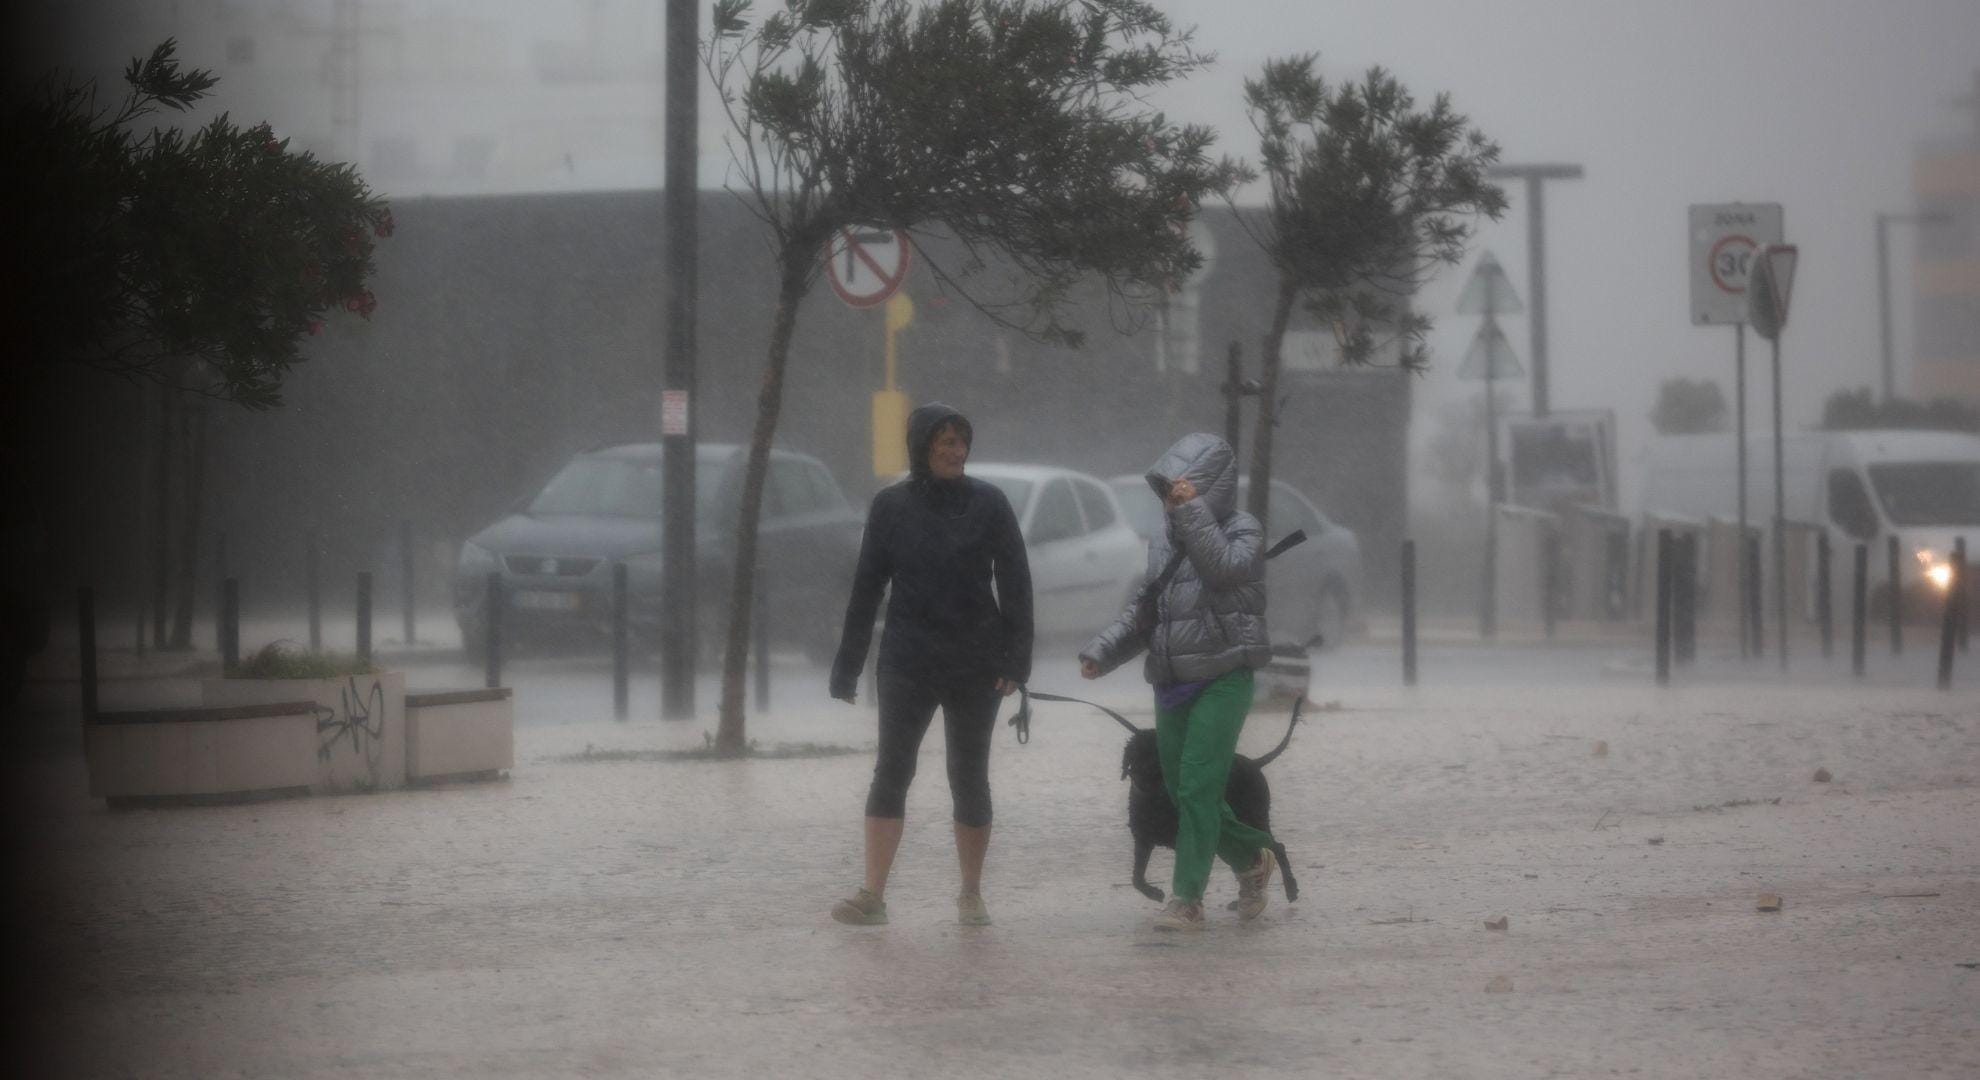 mau tempo: portugal deve preparar-se para mais e piores fenómenos extremos